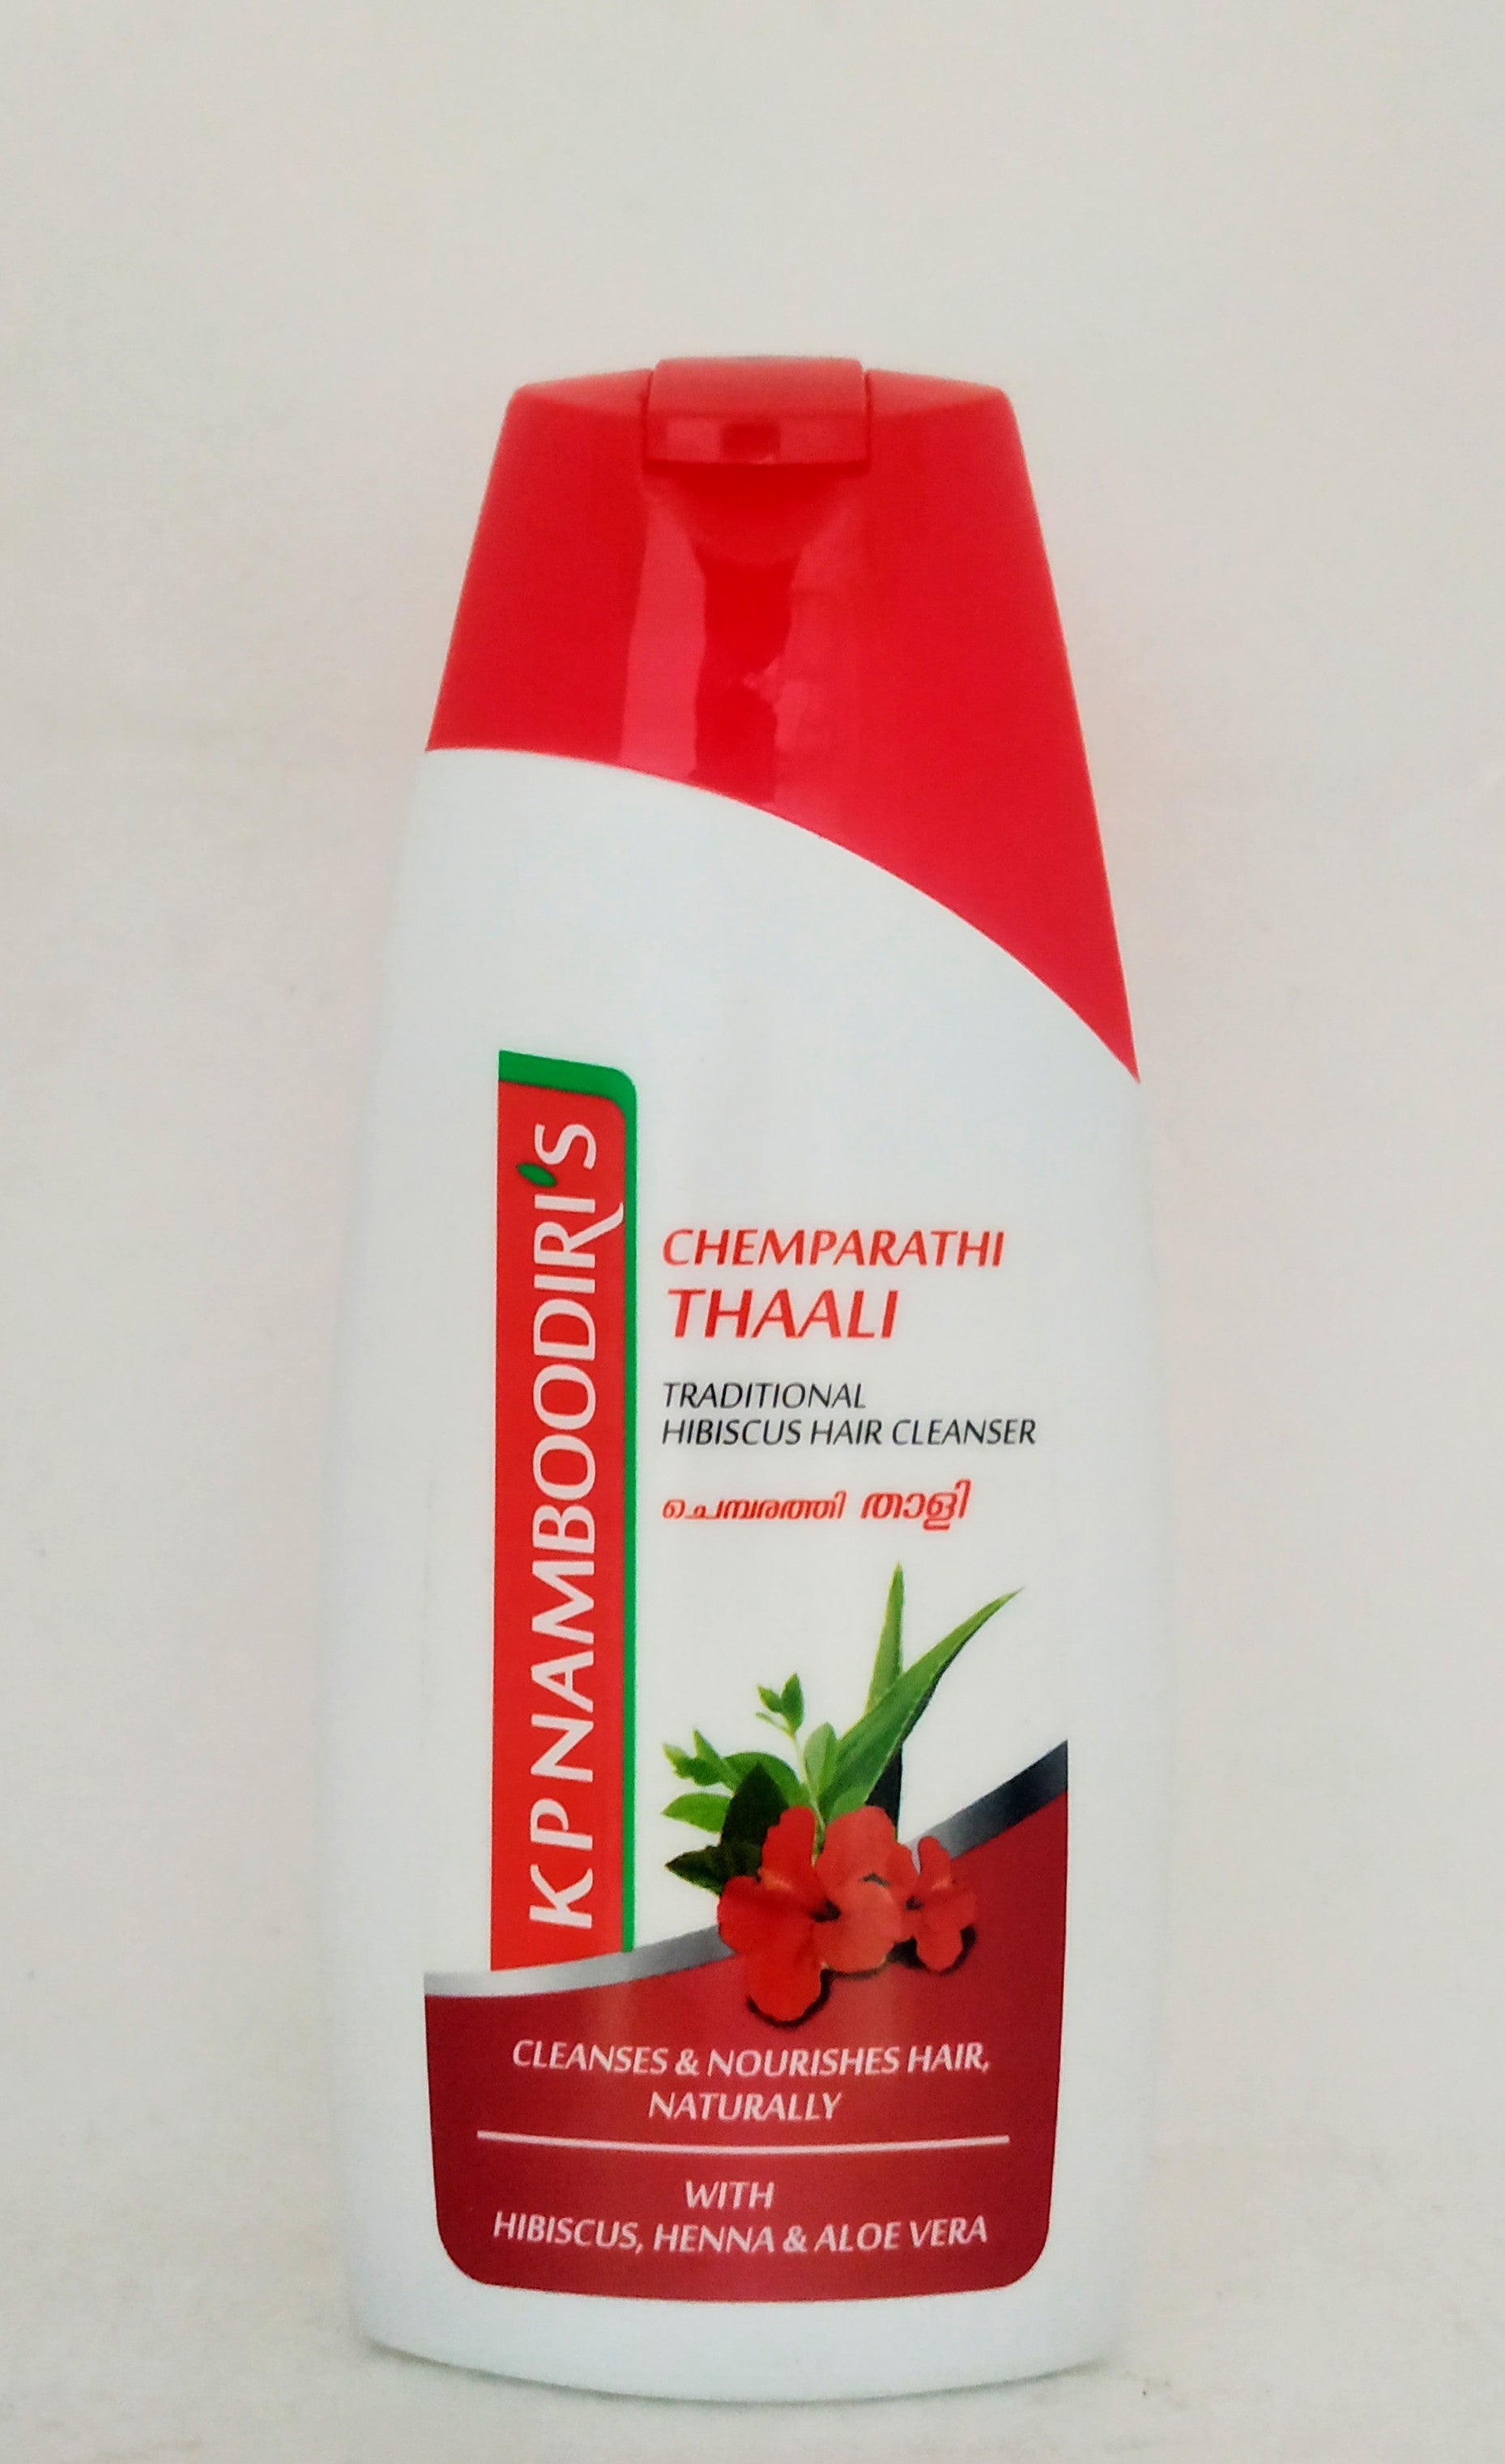 Shop KP Namboodiri Hibiscus Shampoo 100ml at price 60.00 from KP Namboodiri Online - Ayush Care